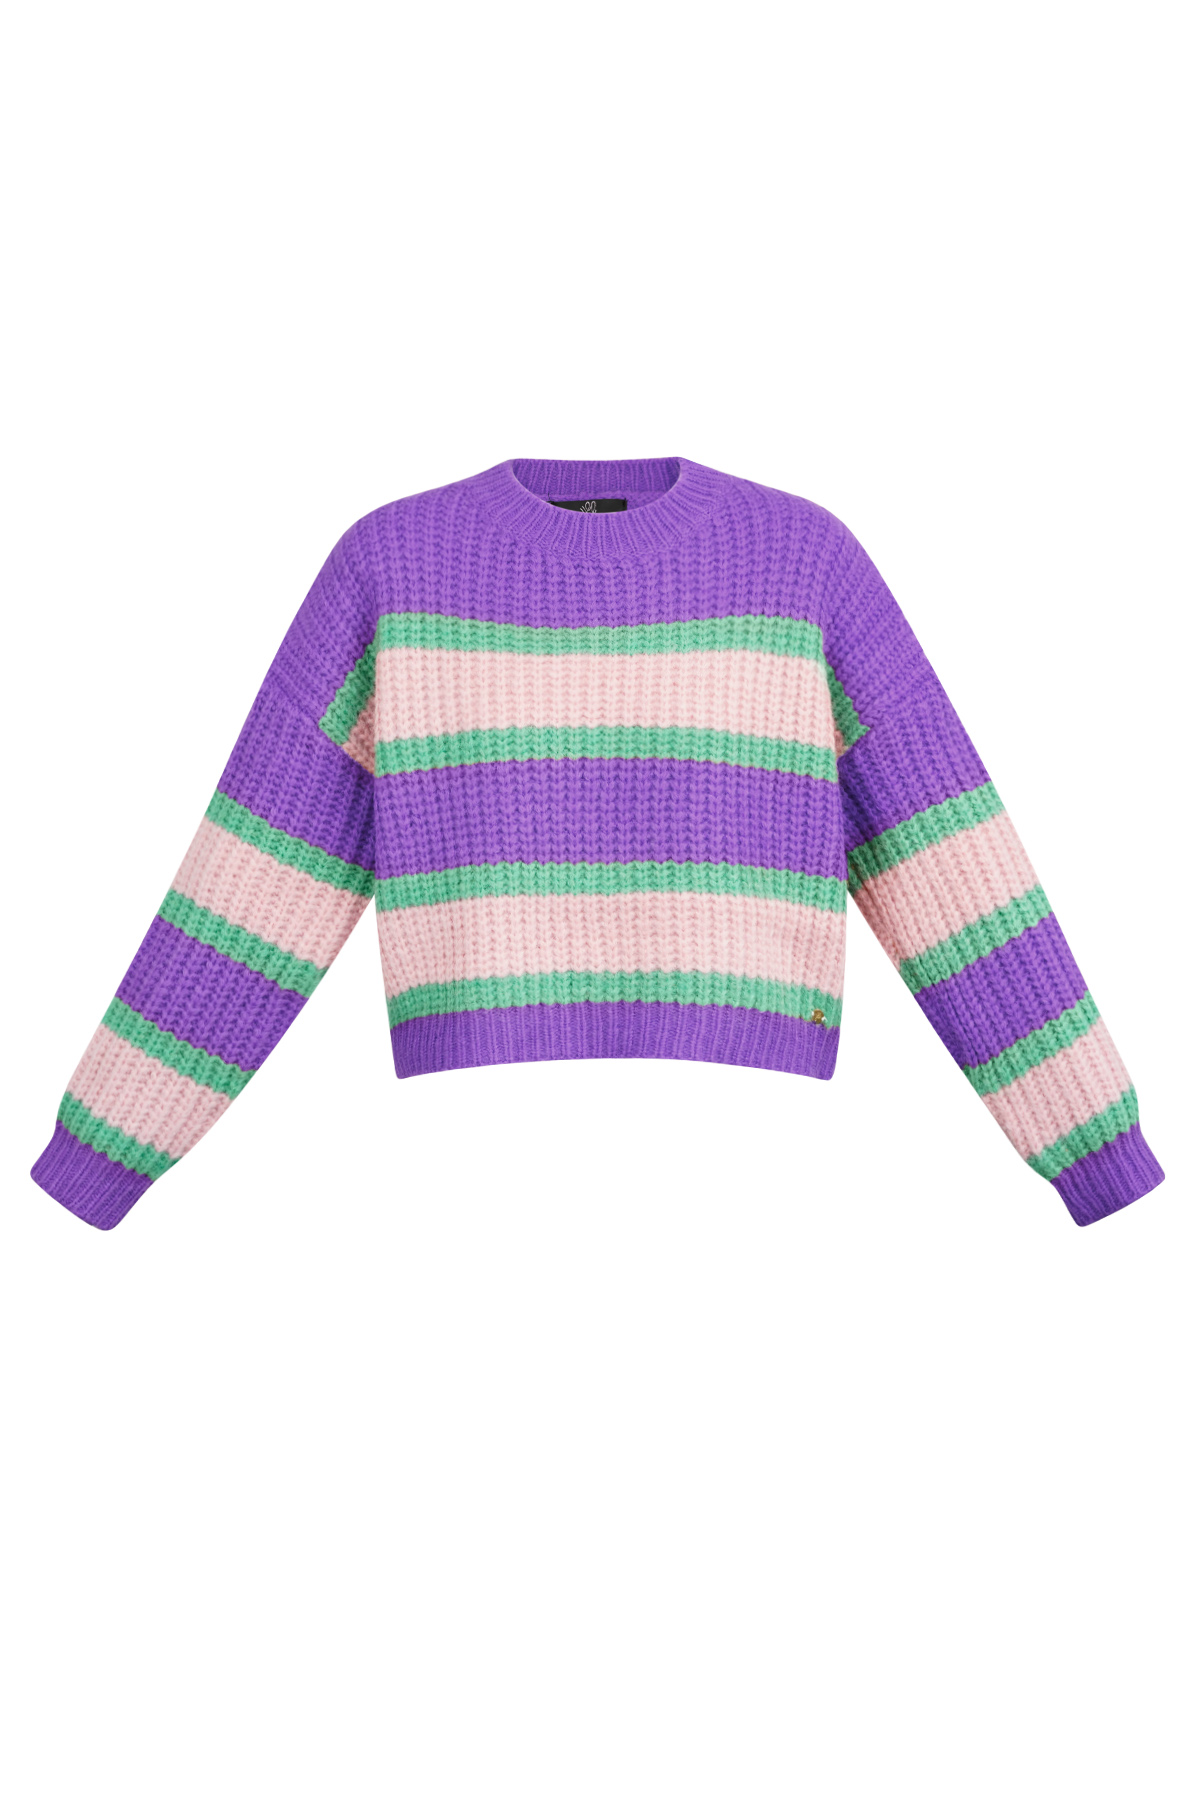 Pull tricoté tricolore à rayure - rose violet